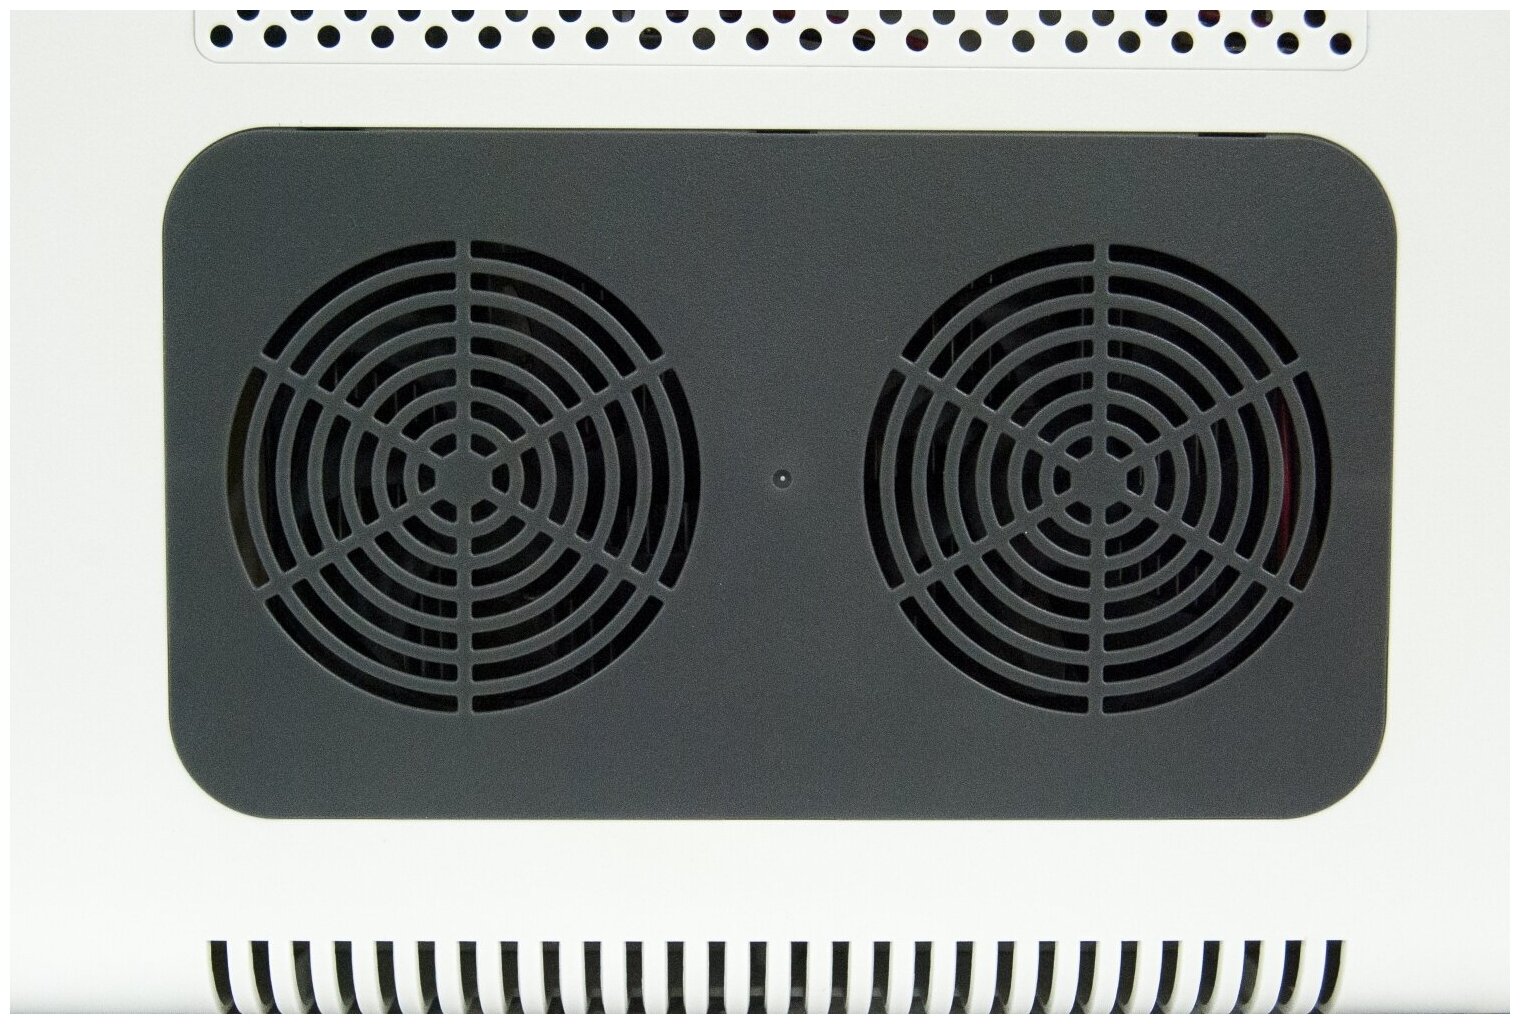 Холодильник автомобильный AVS CC-27WBC 12V/24V/220V (программное цифровое управление USB-порт) 27 л термоэлектрический (эффект Пельтье) A07084S